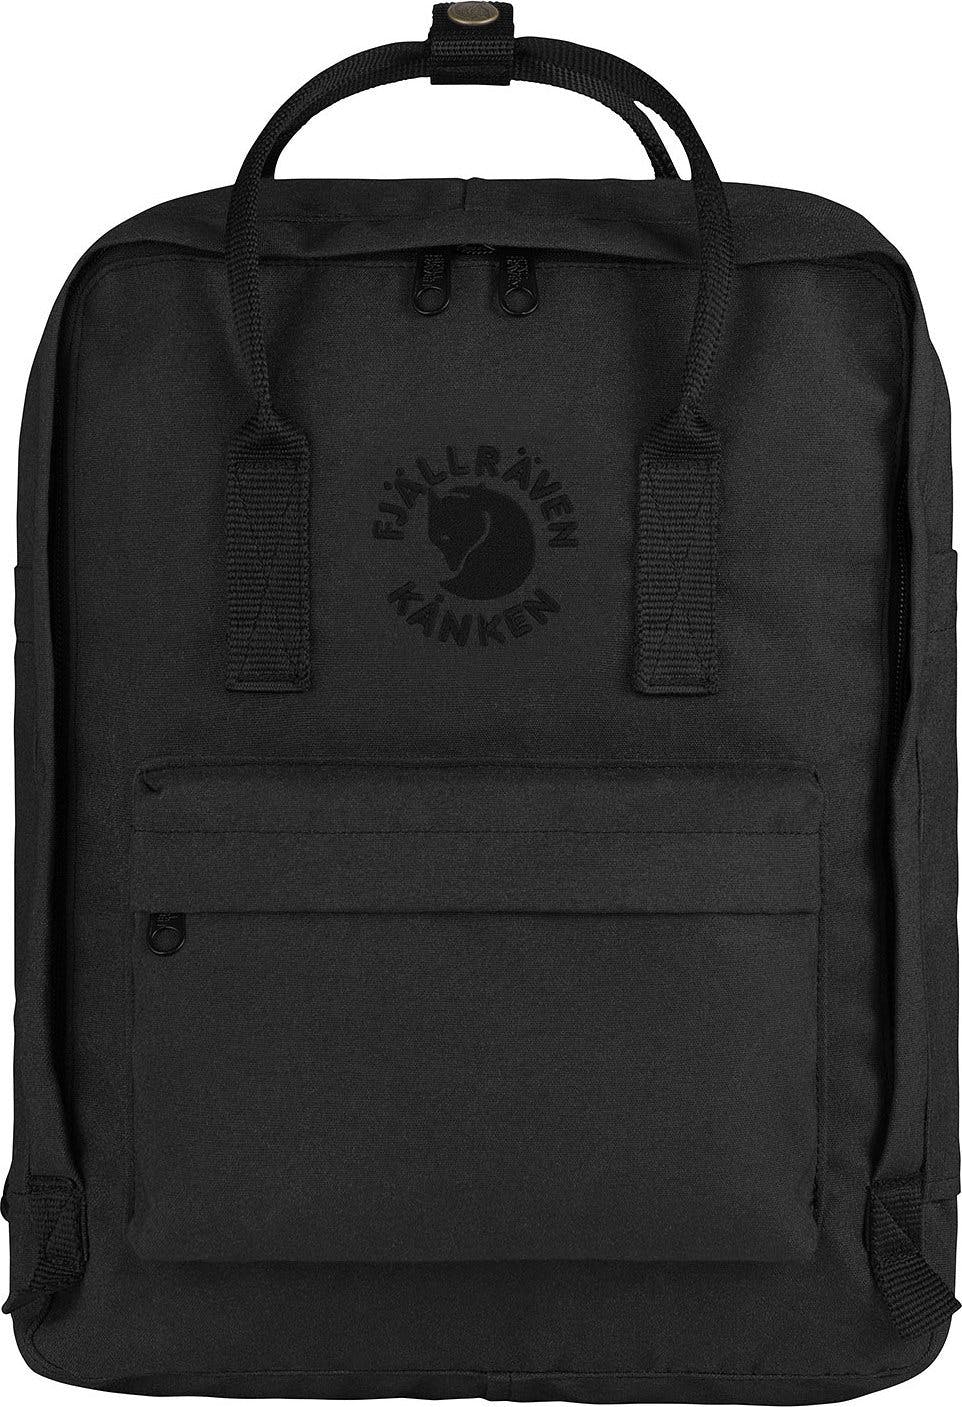 Product image for Re-Kånken Backpack 16L